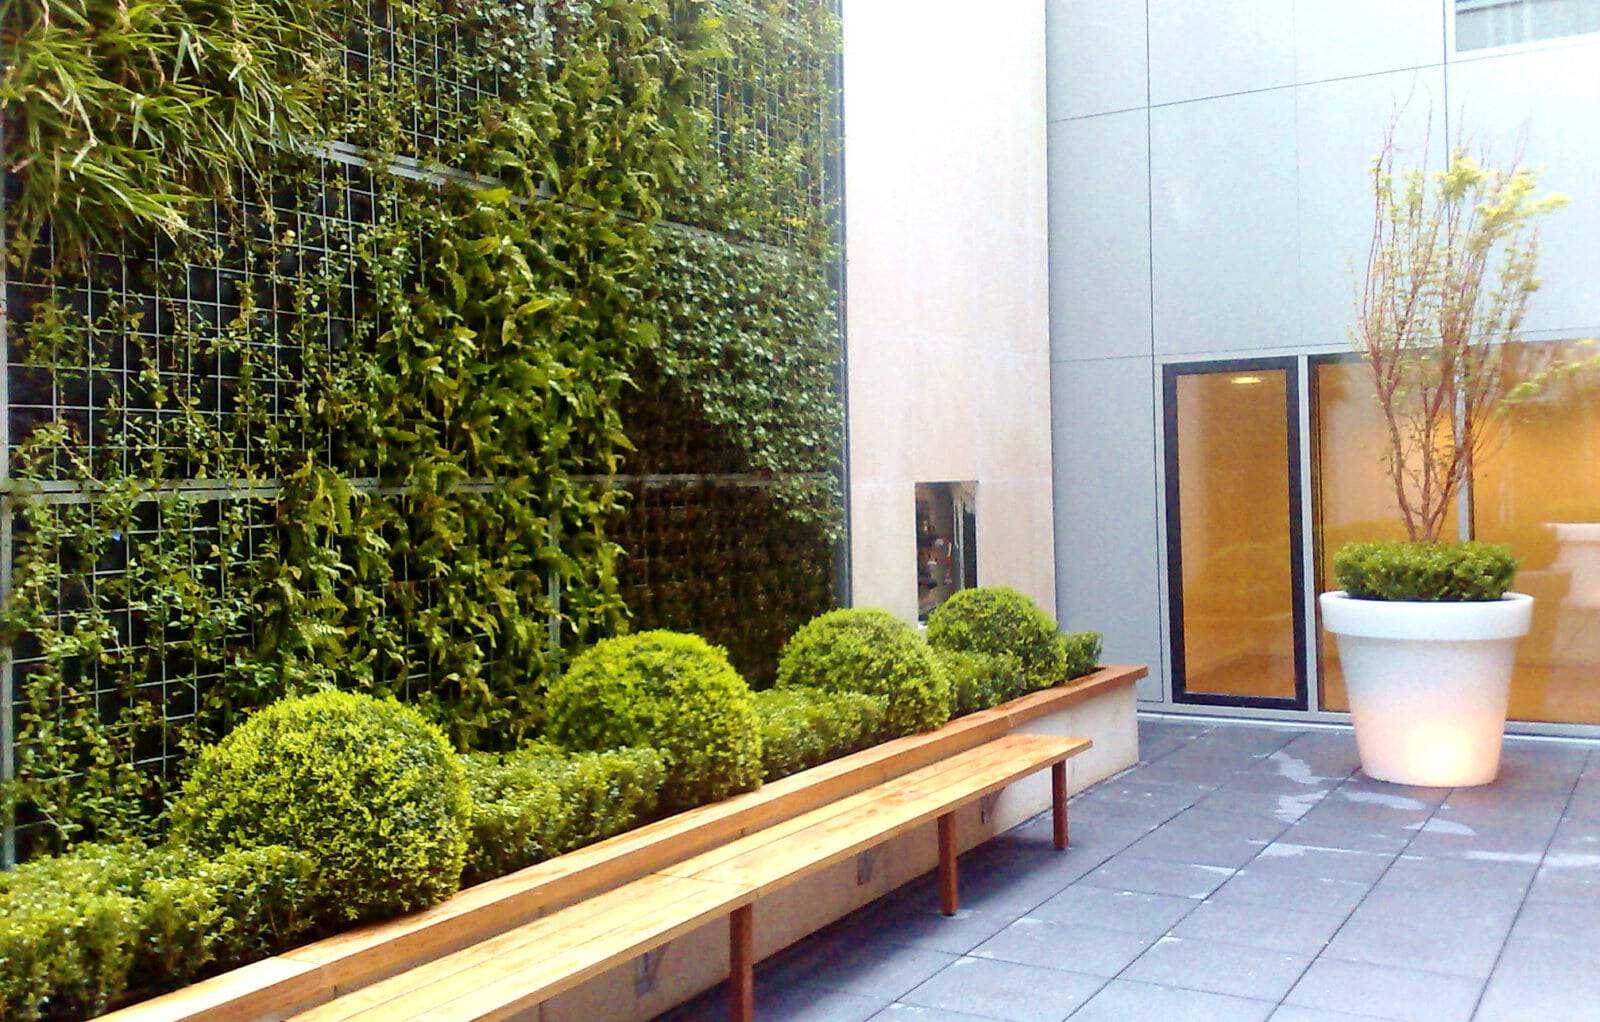 Mur végétal avec plantes naturelles